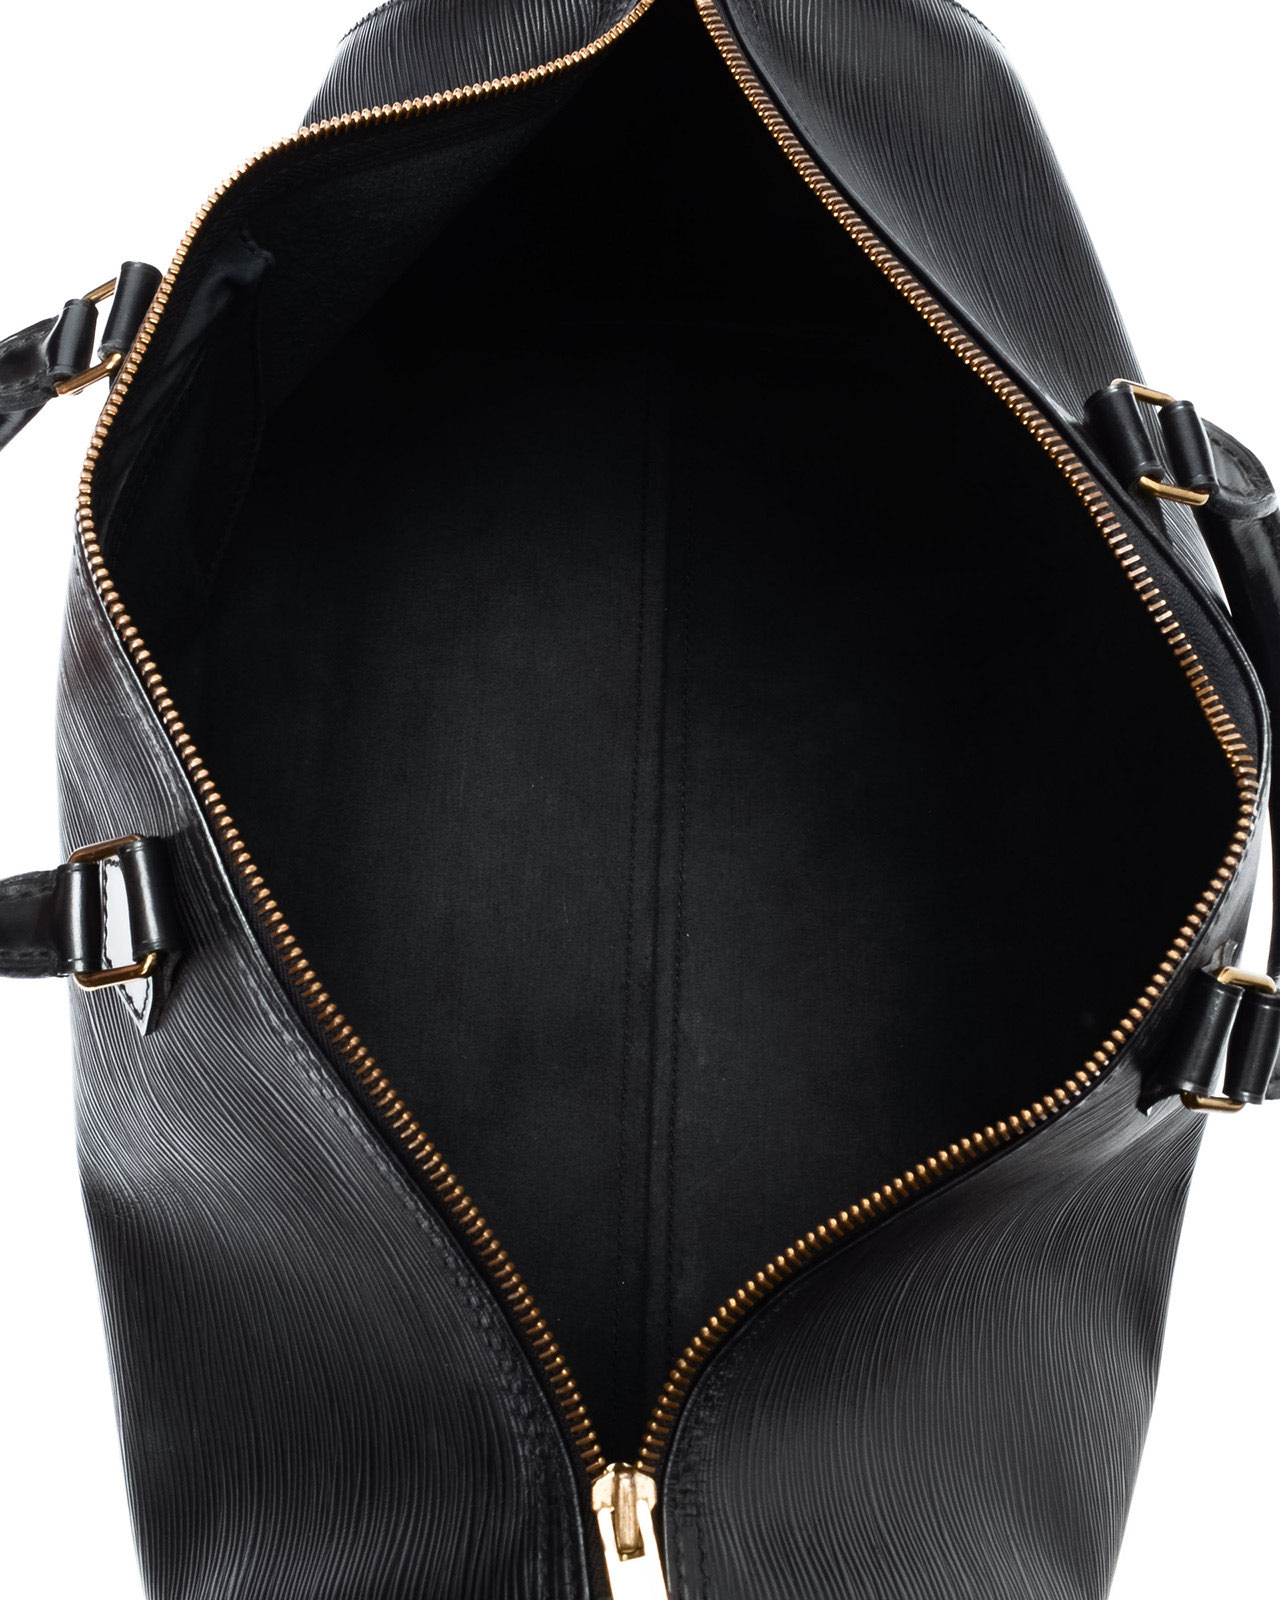 Lyst - Louis Vuitton Epi Speedy 40 Travel Bag in Black